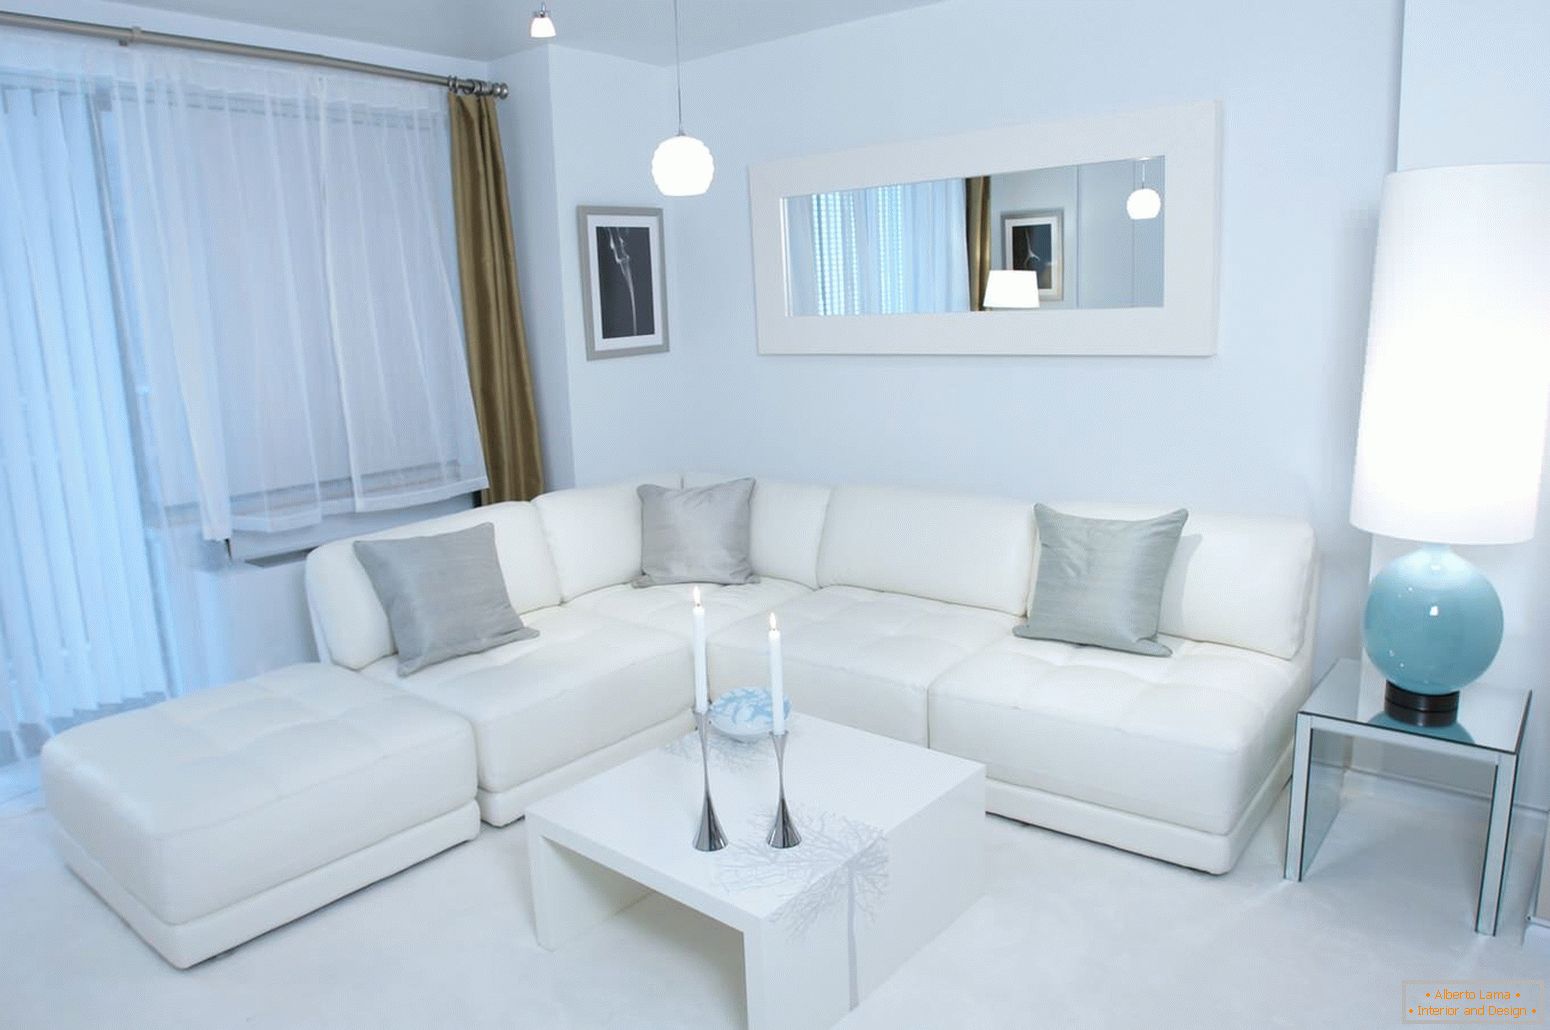 White corner sofa with gray pillows